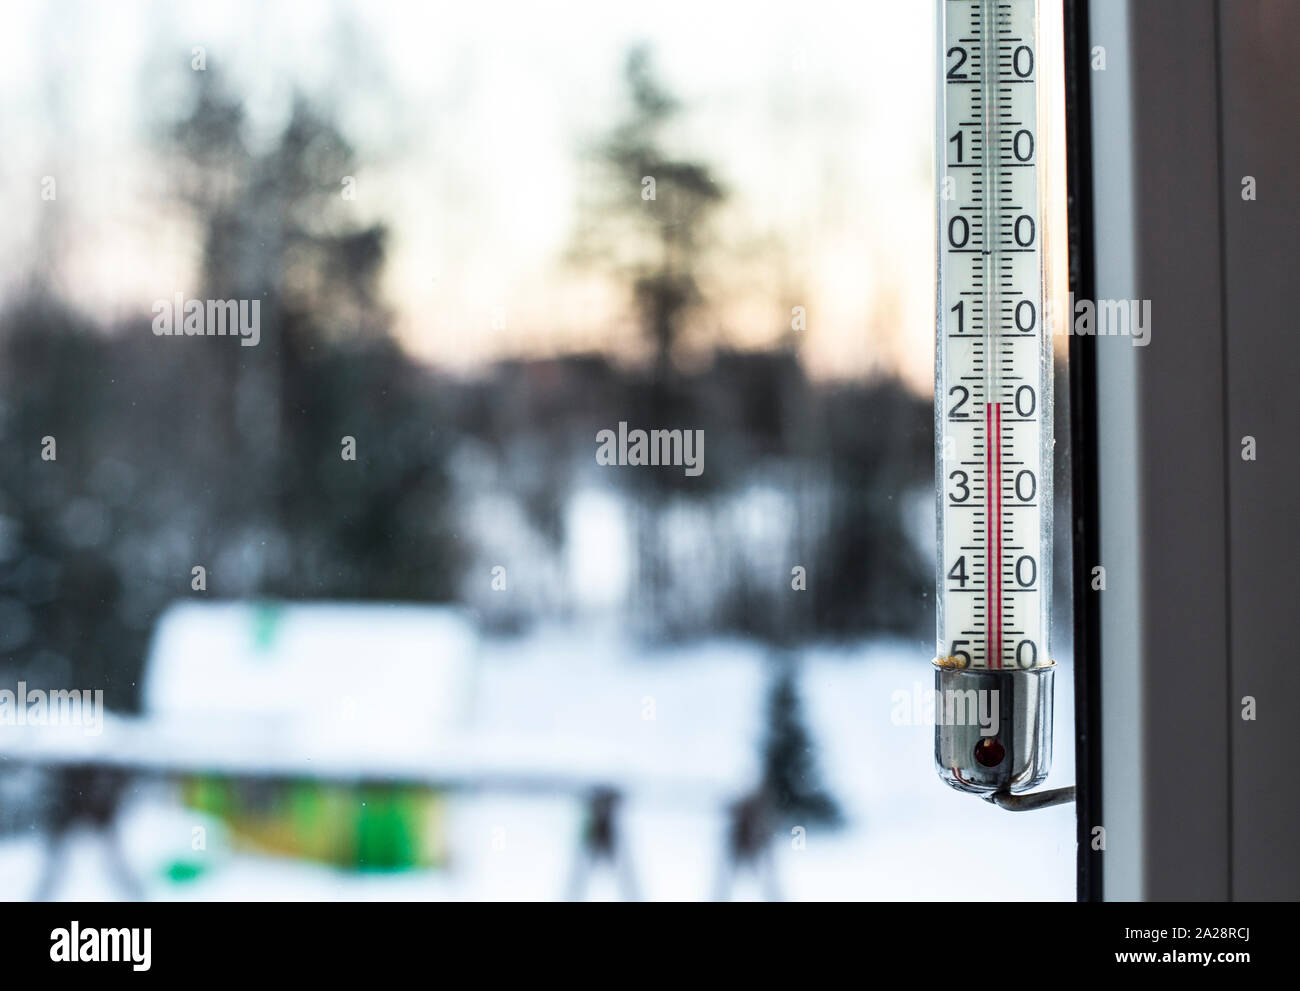 Ondata di freddo in Europa in inverno. Il vecchio stile outdoor termometro mostra -18 gradi freddo. Foto Stock